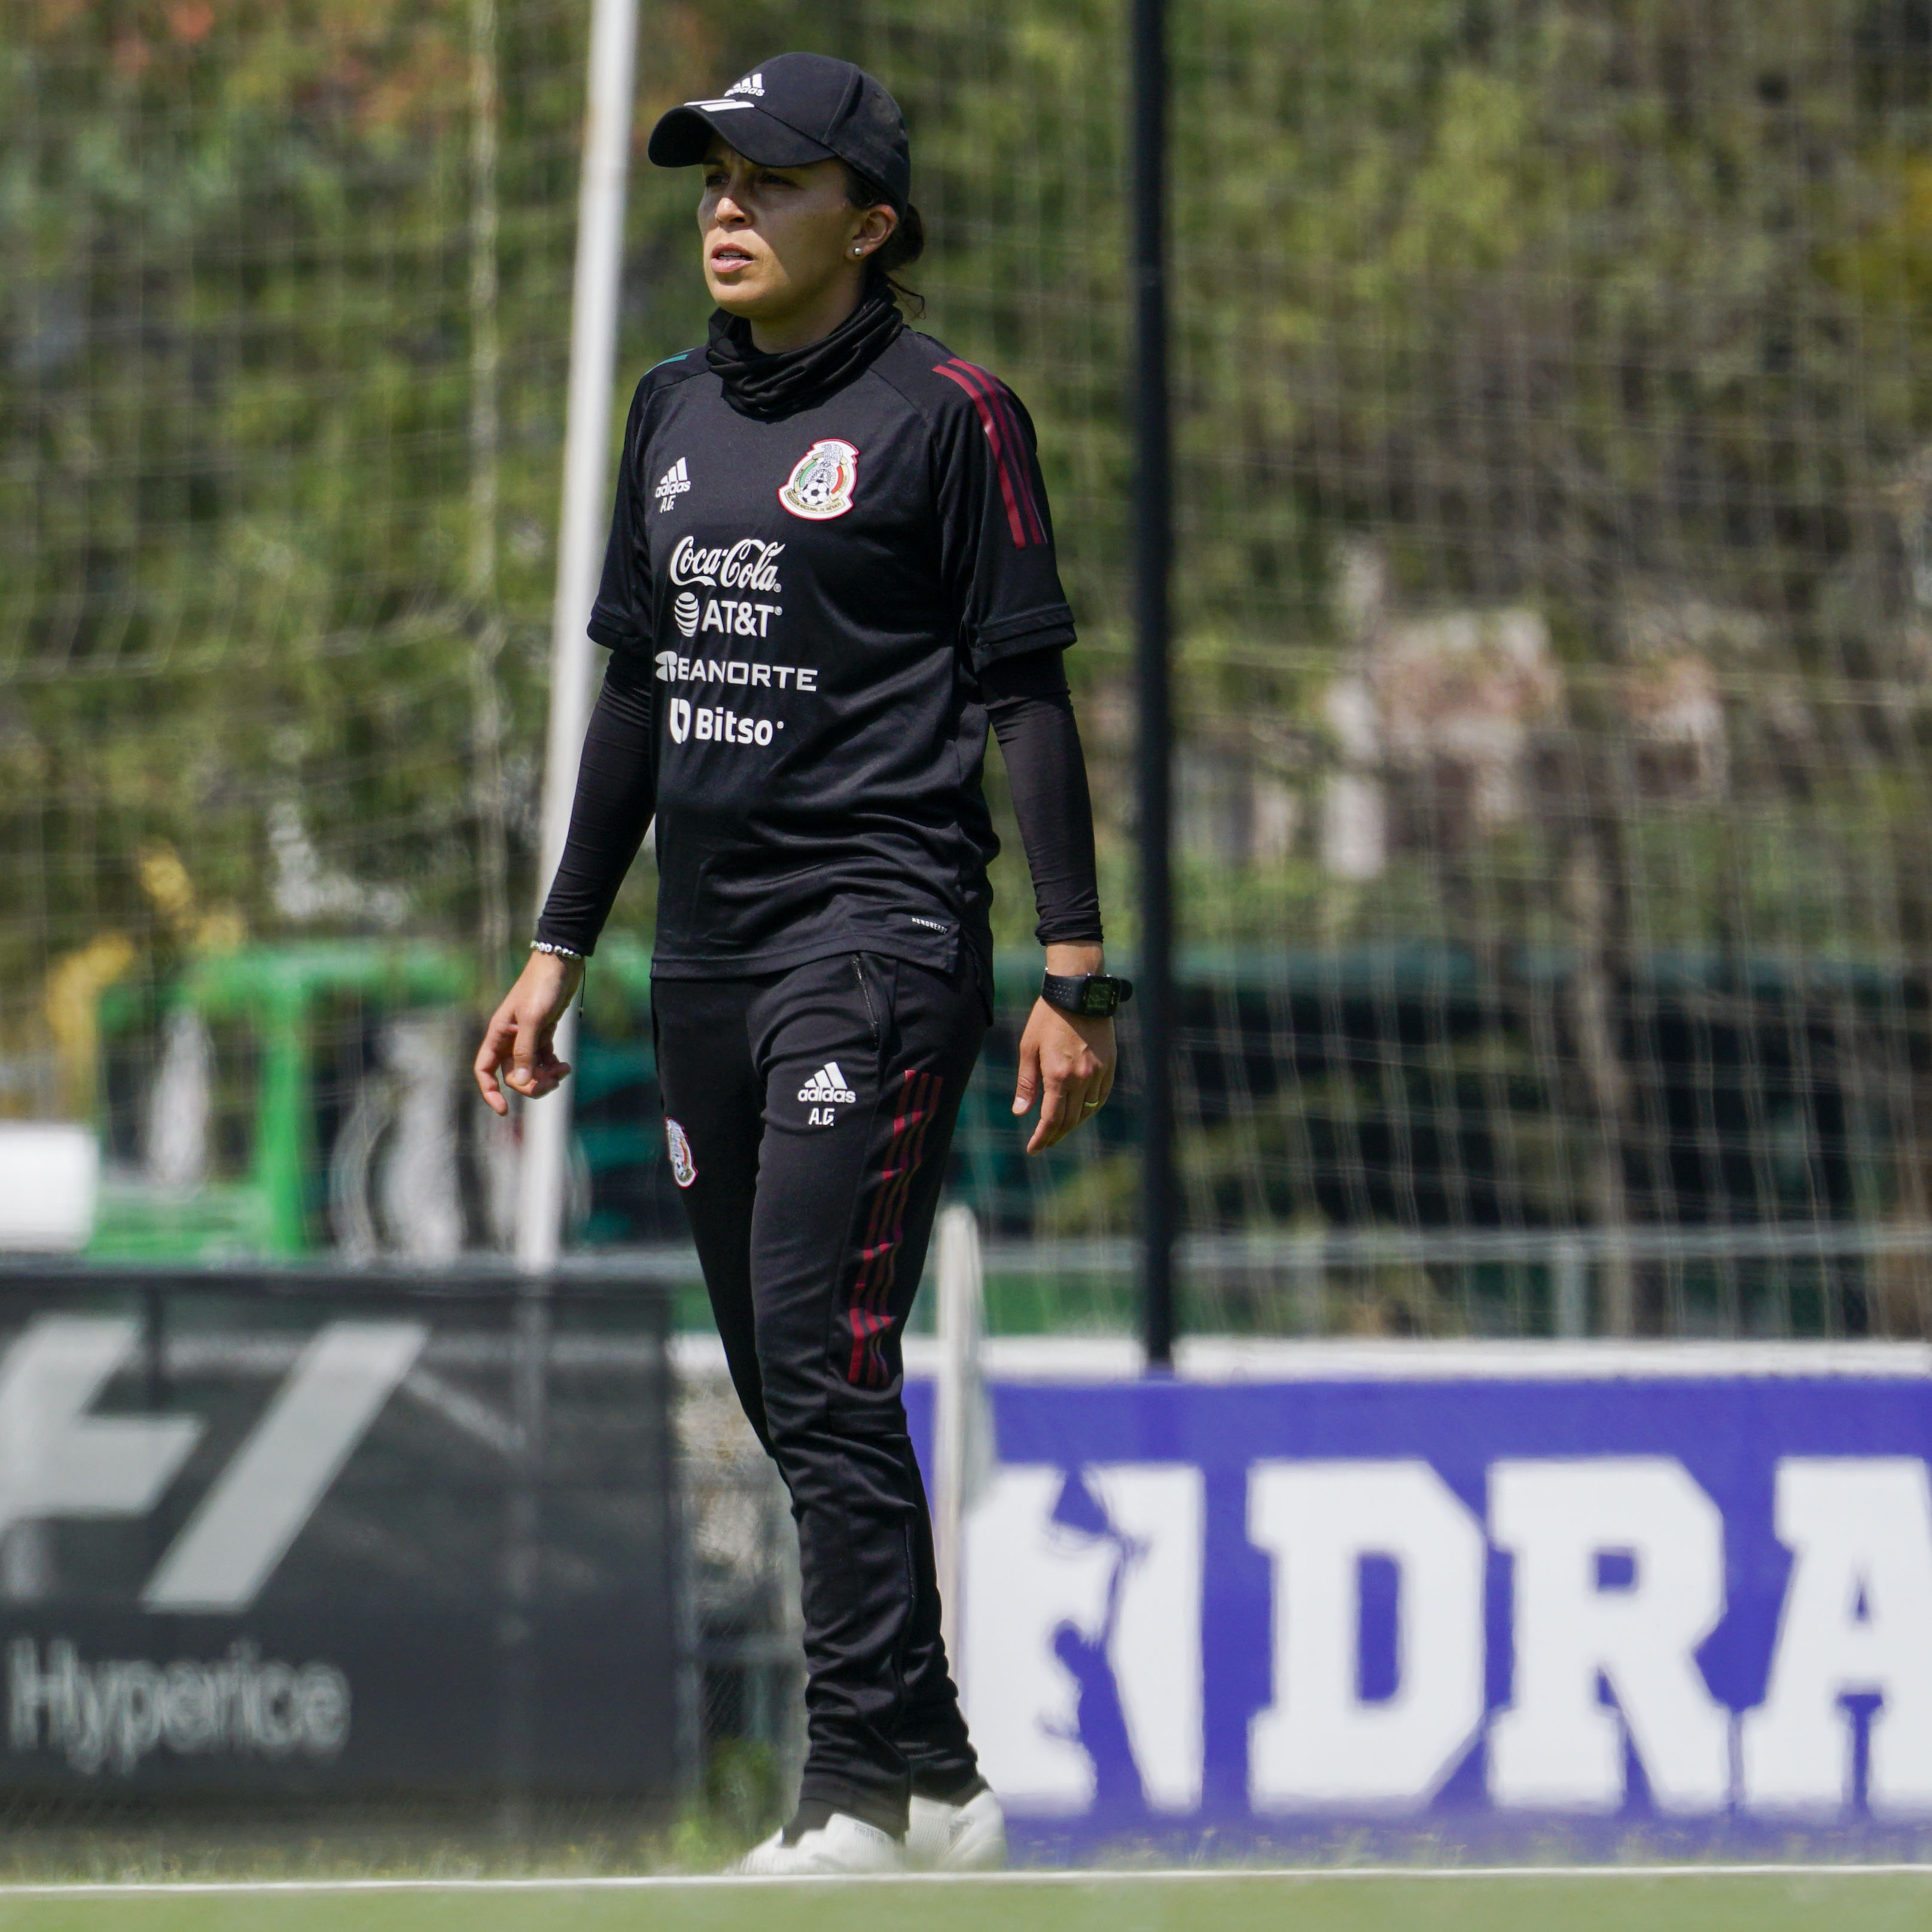 La mexicana ha tenido una amplia carrera en el fútbol, tanto como jugadora como entrenadora (Foto: Twitter / @Miseleccionfem)